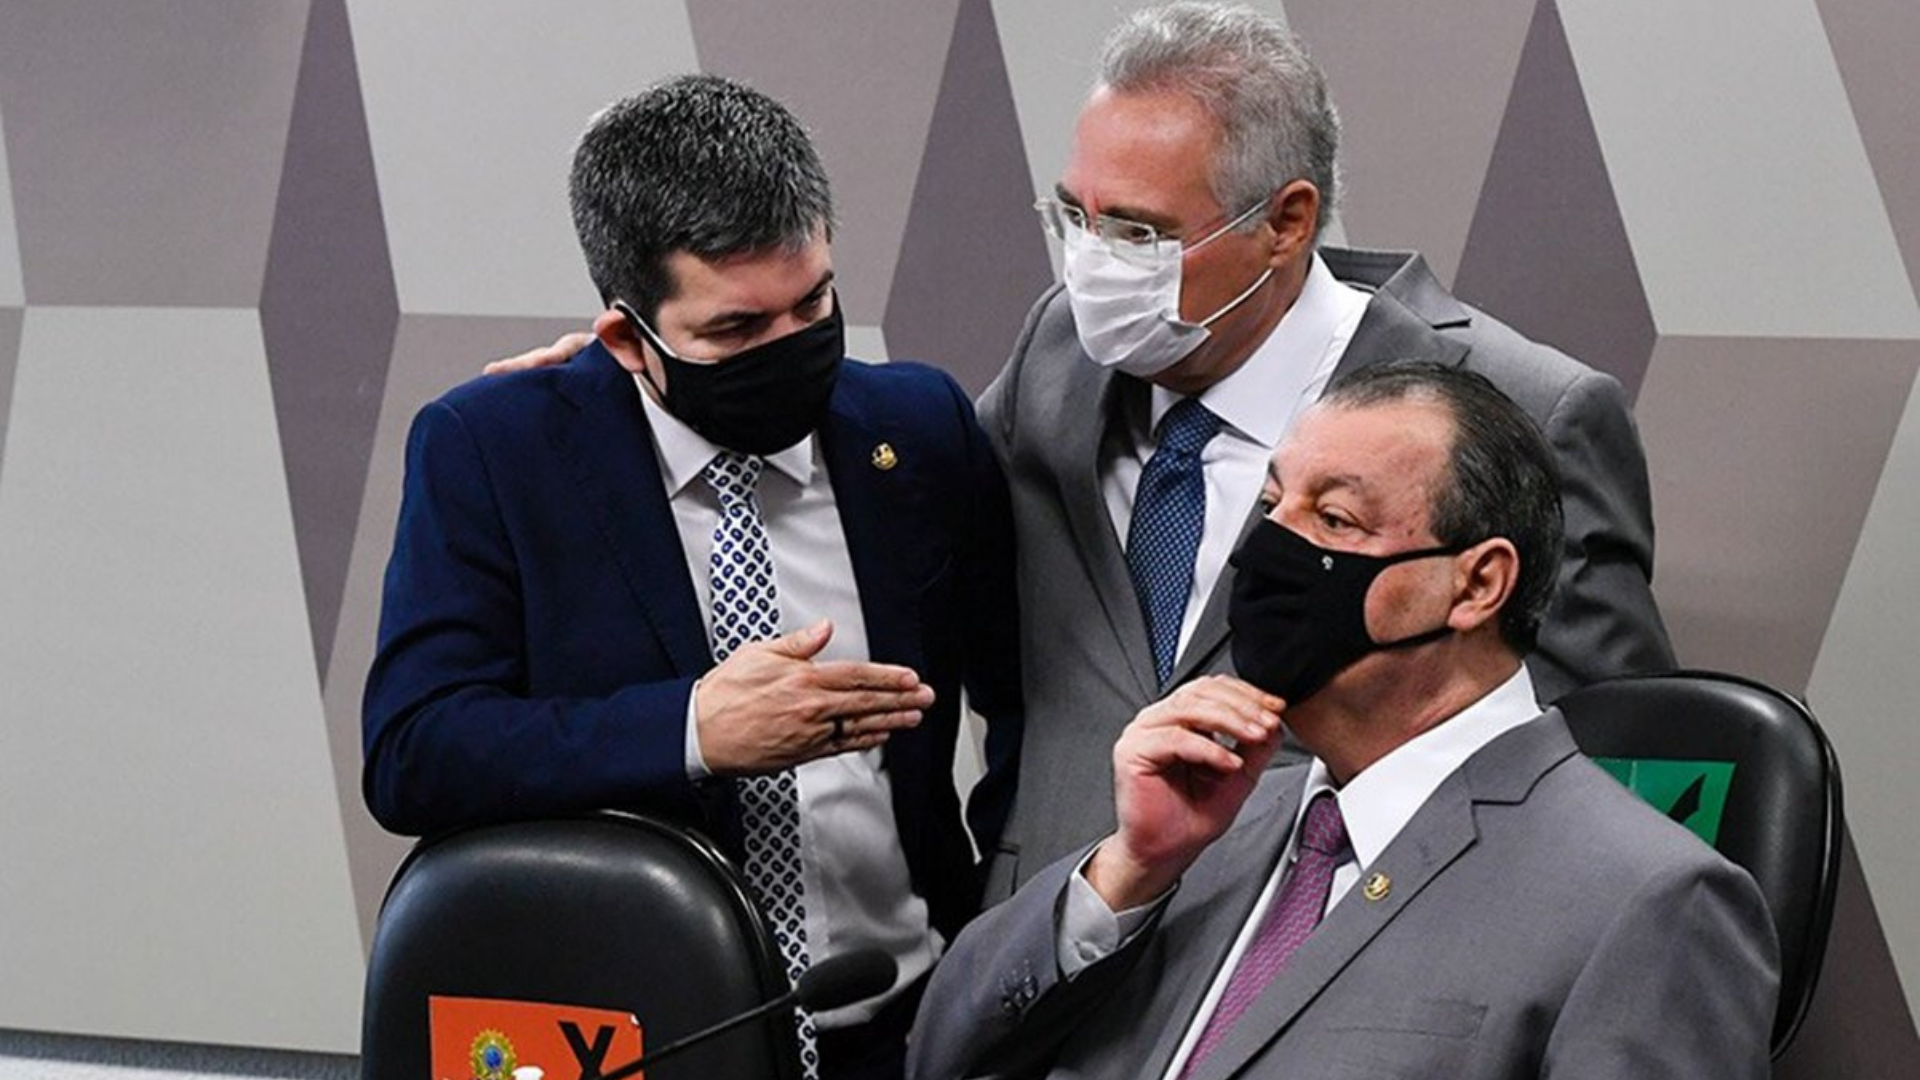 Investigações da CPI avançam. foto da comissão junta, com Randolfe Rodrigues, Omar Aziz e Renan Calheiros, todos usam terno e máscaras